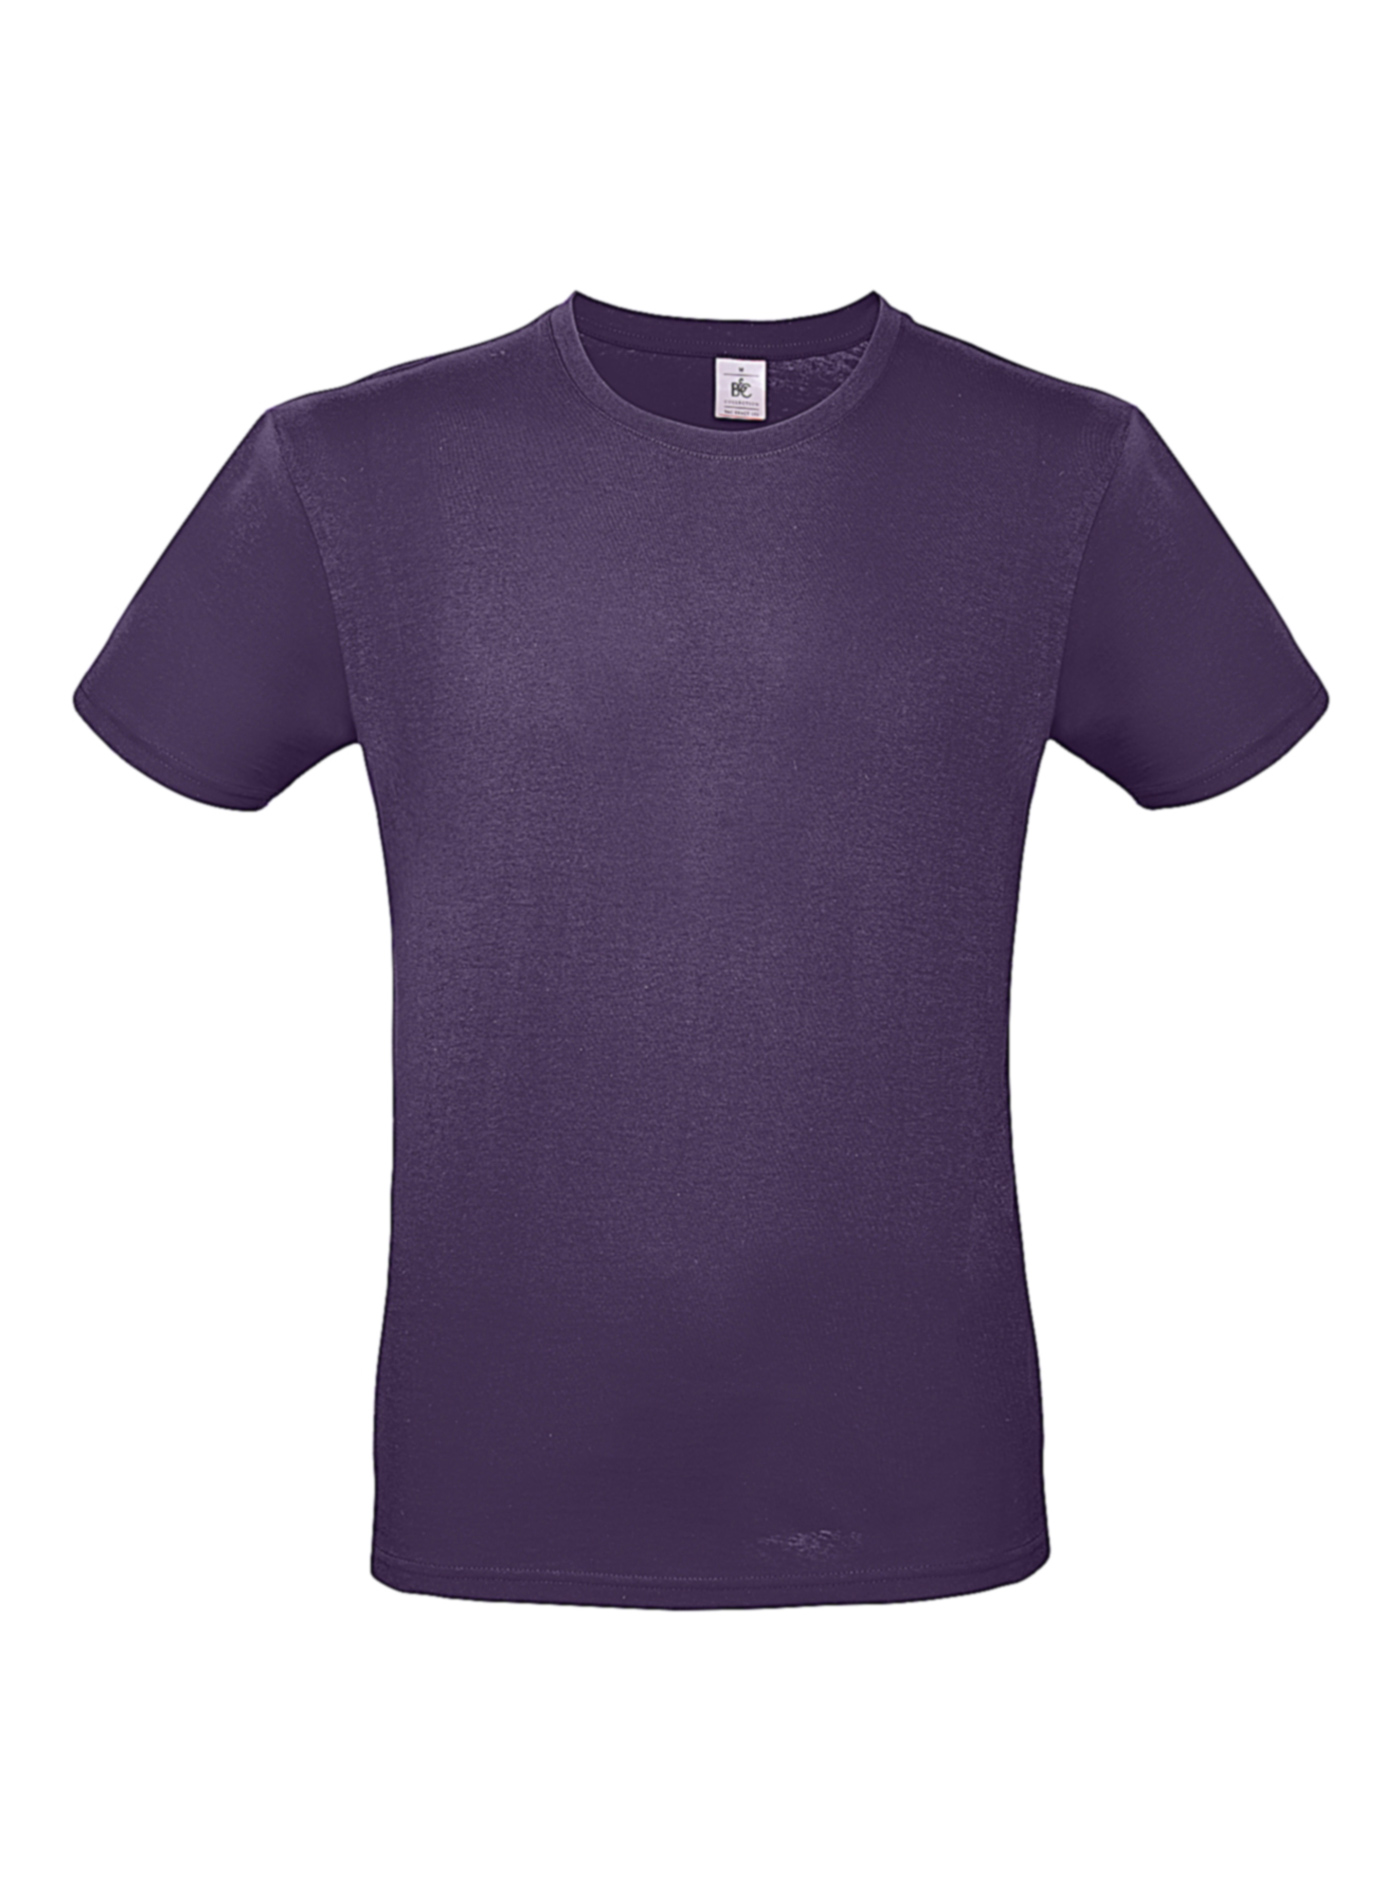 Pánské tričko B&C - Tmavě fialová L